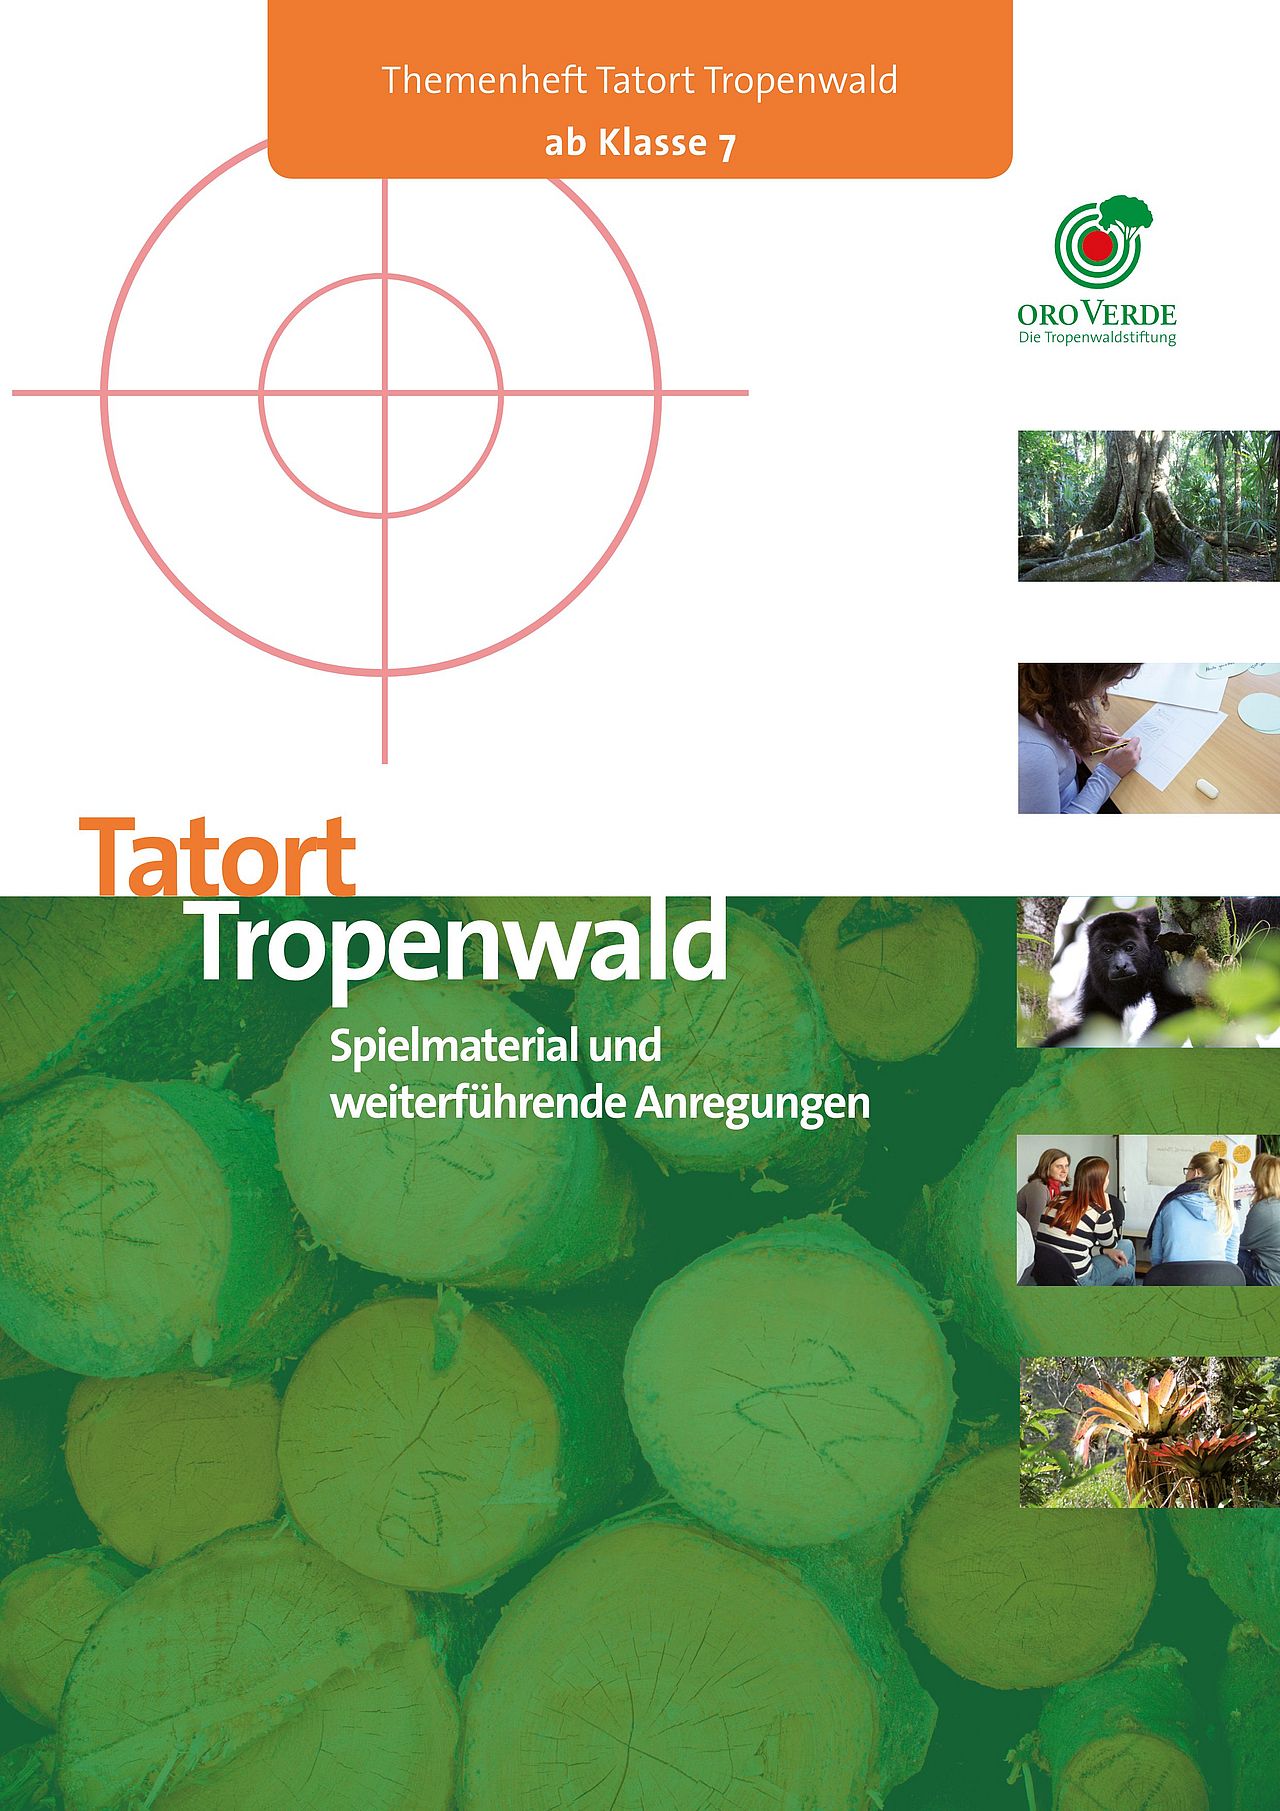 Die neue Spielanleitung für den Tatort Tropenwald aktualisiert die Inhalte vom Themenheft Tatort Tropenwald